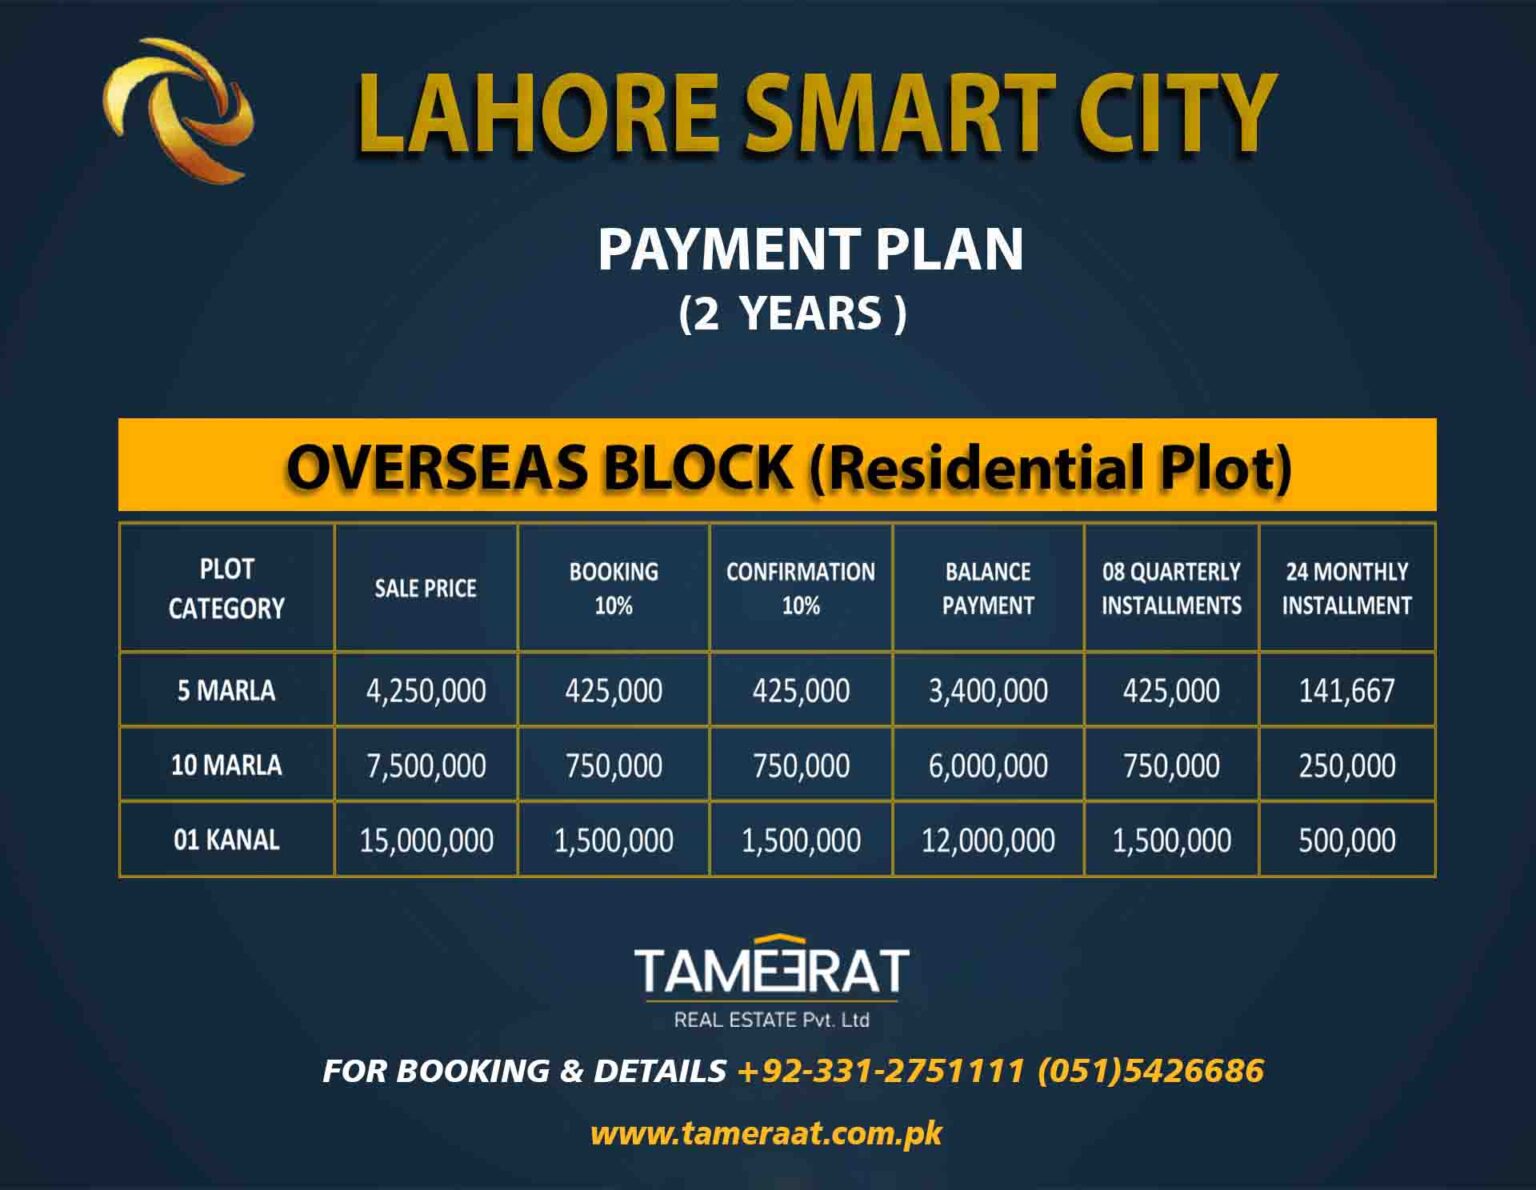 Payment Plan Overseas Block LahoreSmartCity